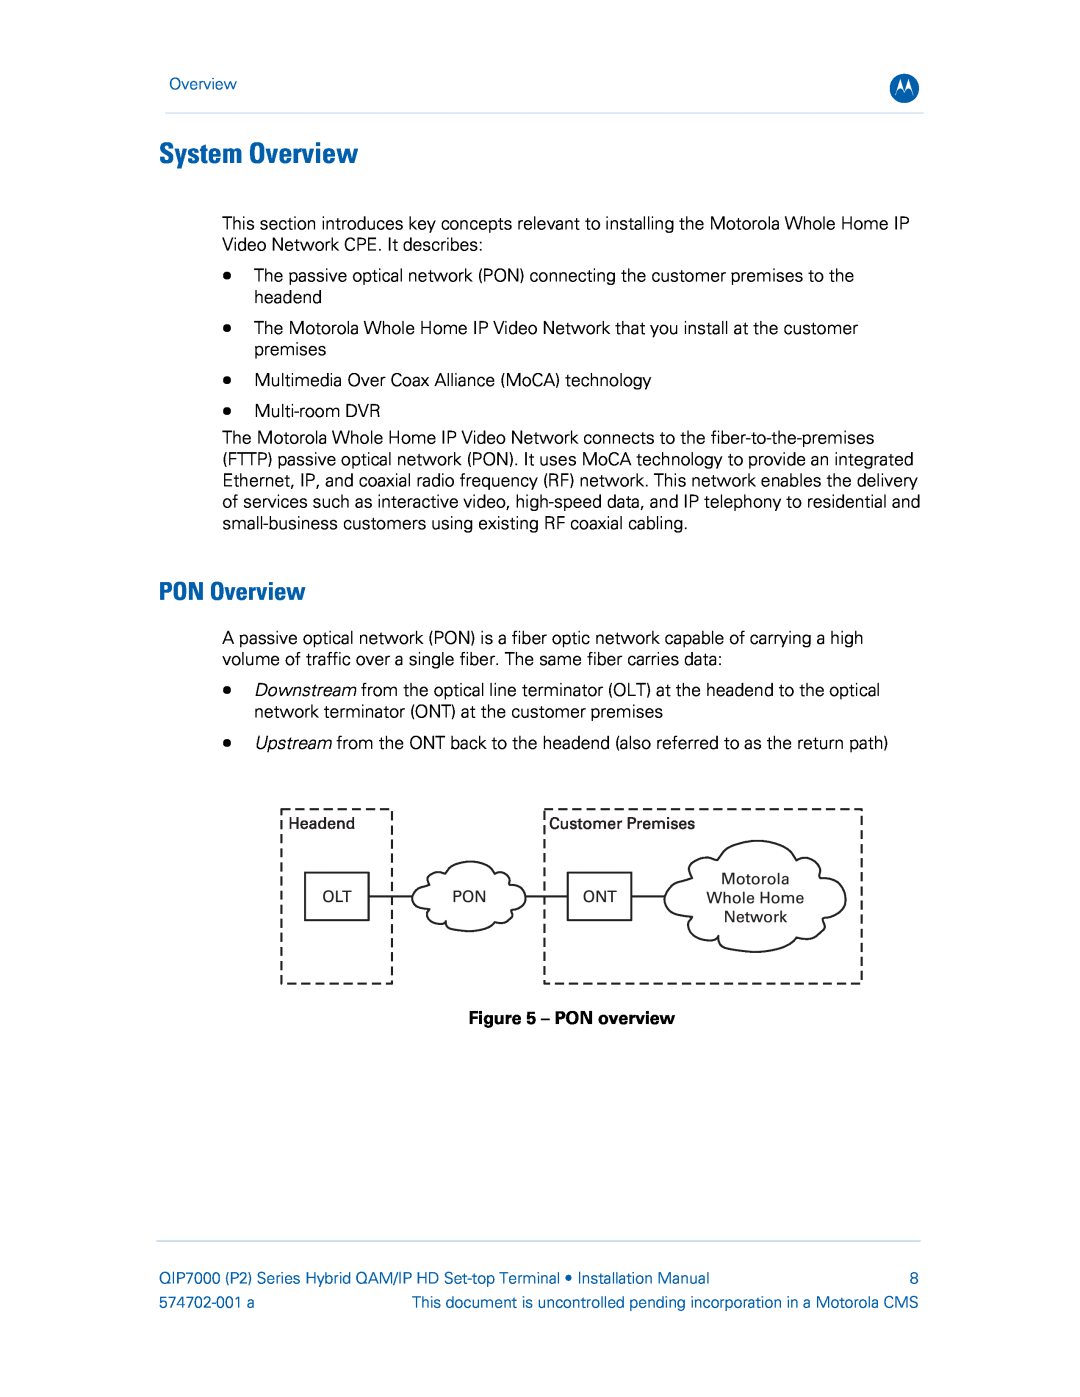 Motorola QIP7000 installation manual System Overview, PON Overview, PON overview 